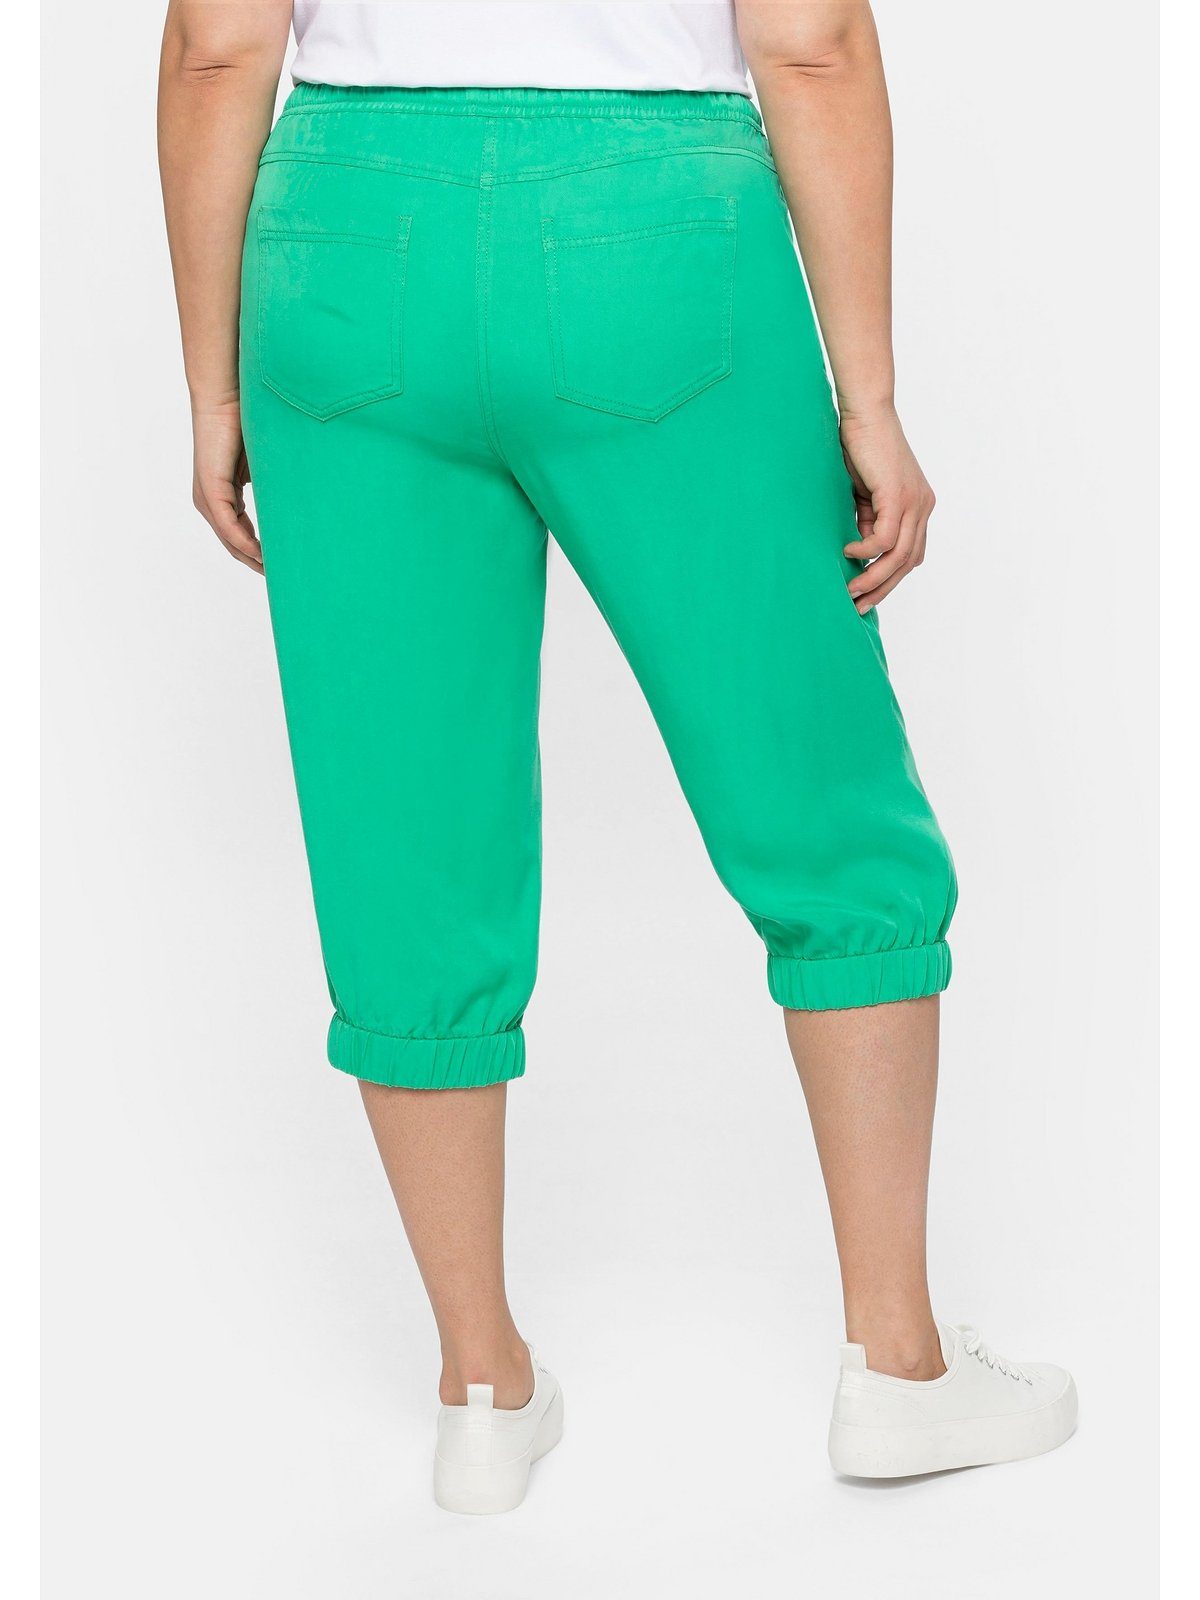 Damen Hosen Sheego Caprihose Joggpants aus pflegeleichter Lyocell-Qualität